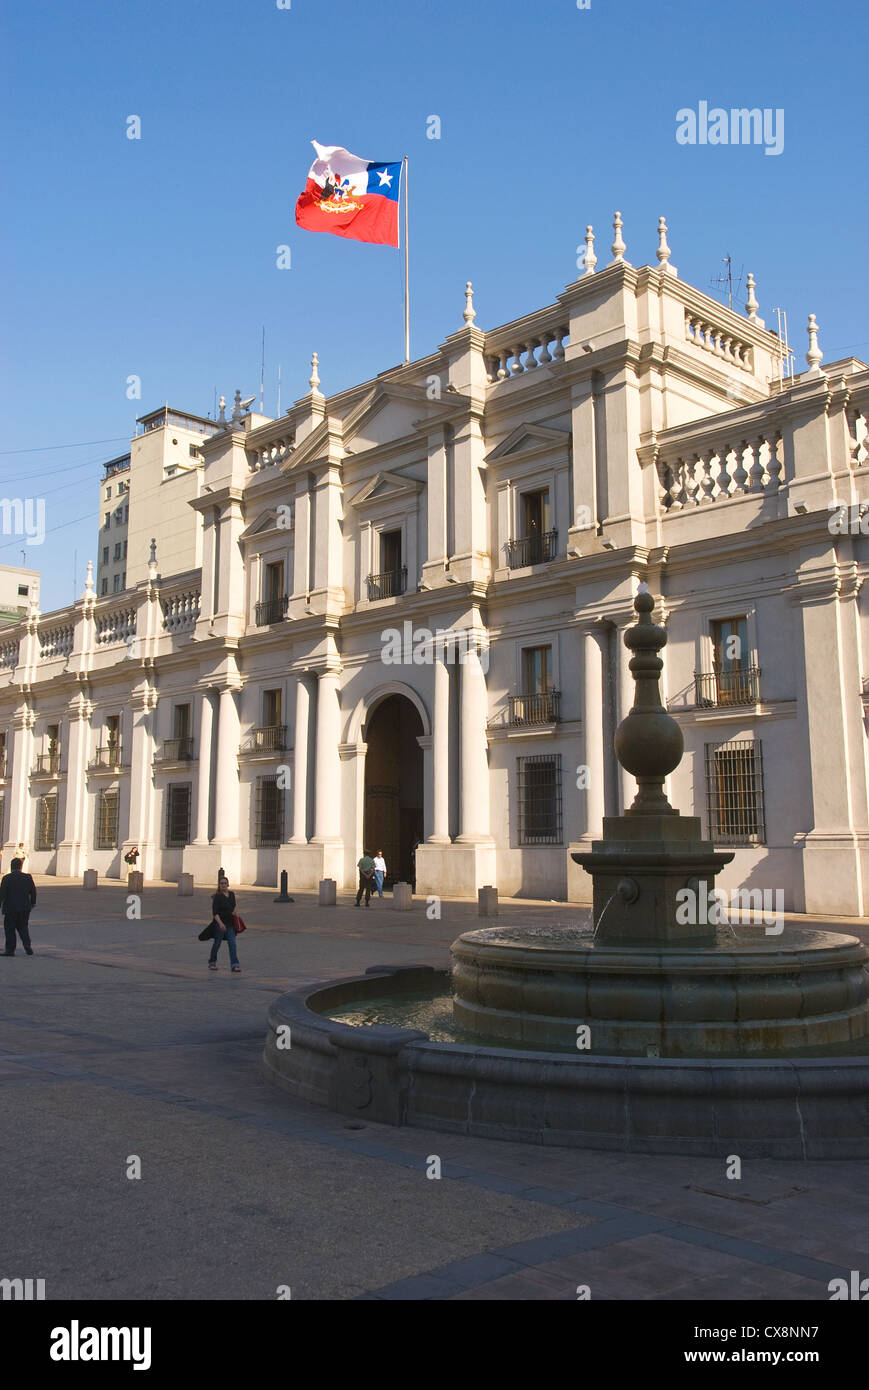 Elk198-1111v Chile, Santiago, Palacio de la Moneda, Presidential Palace with fountain Stock Photo